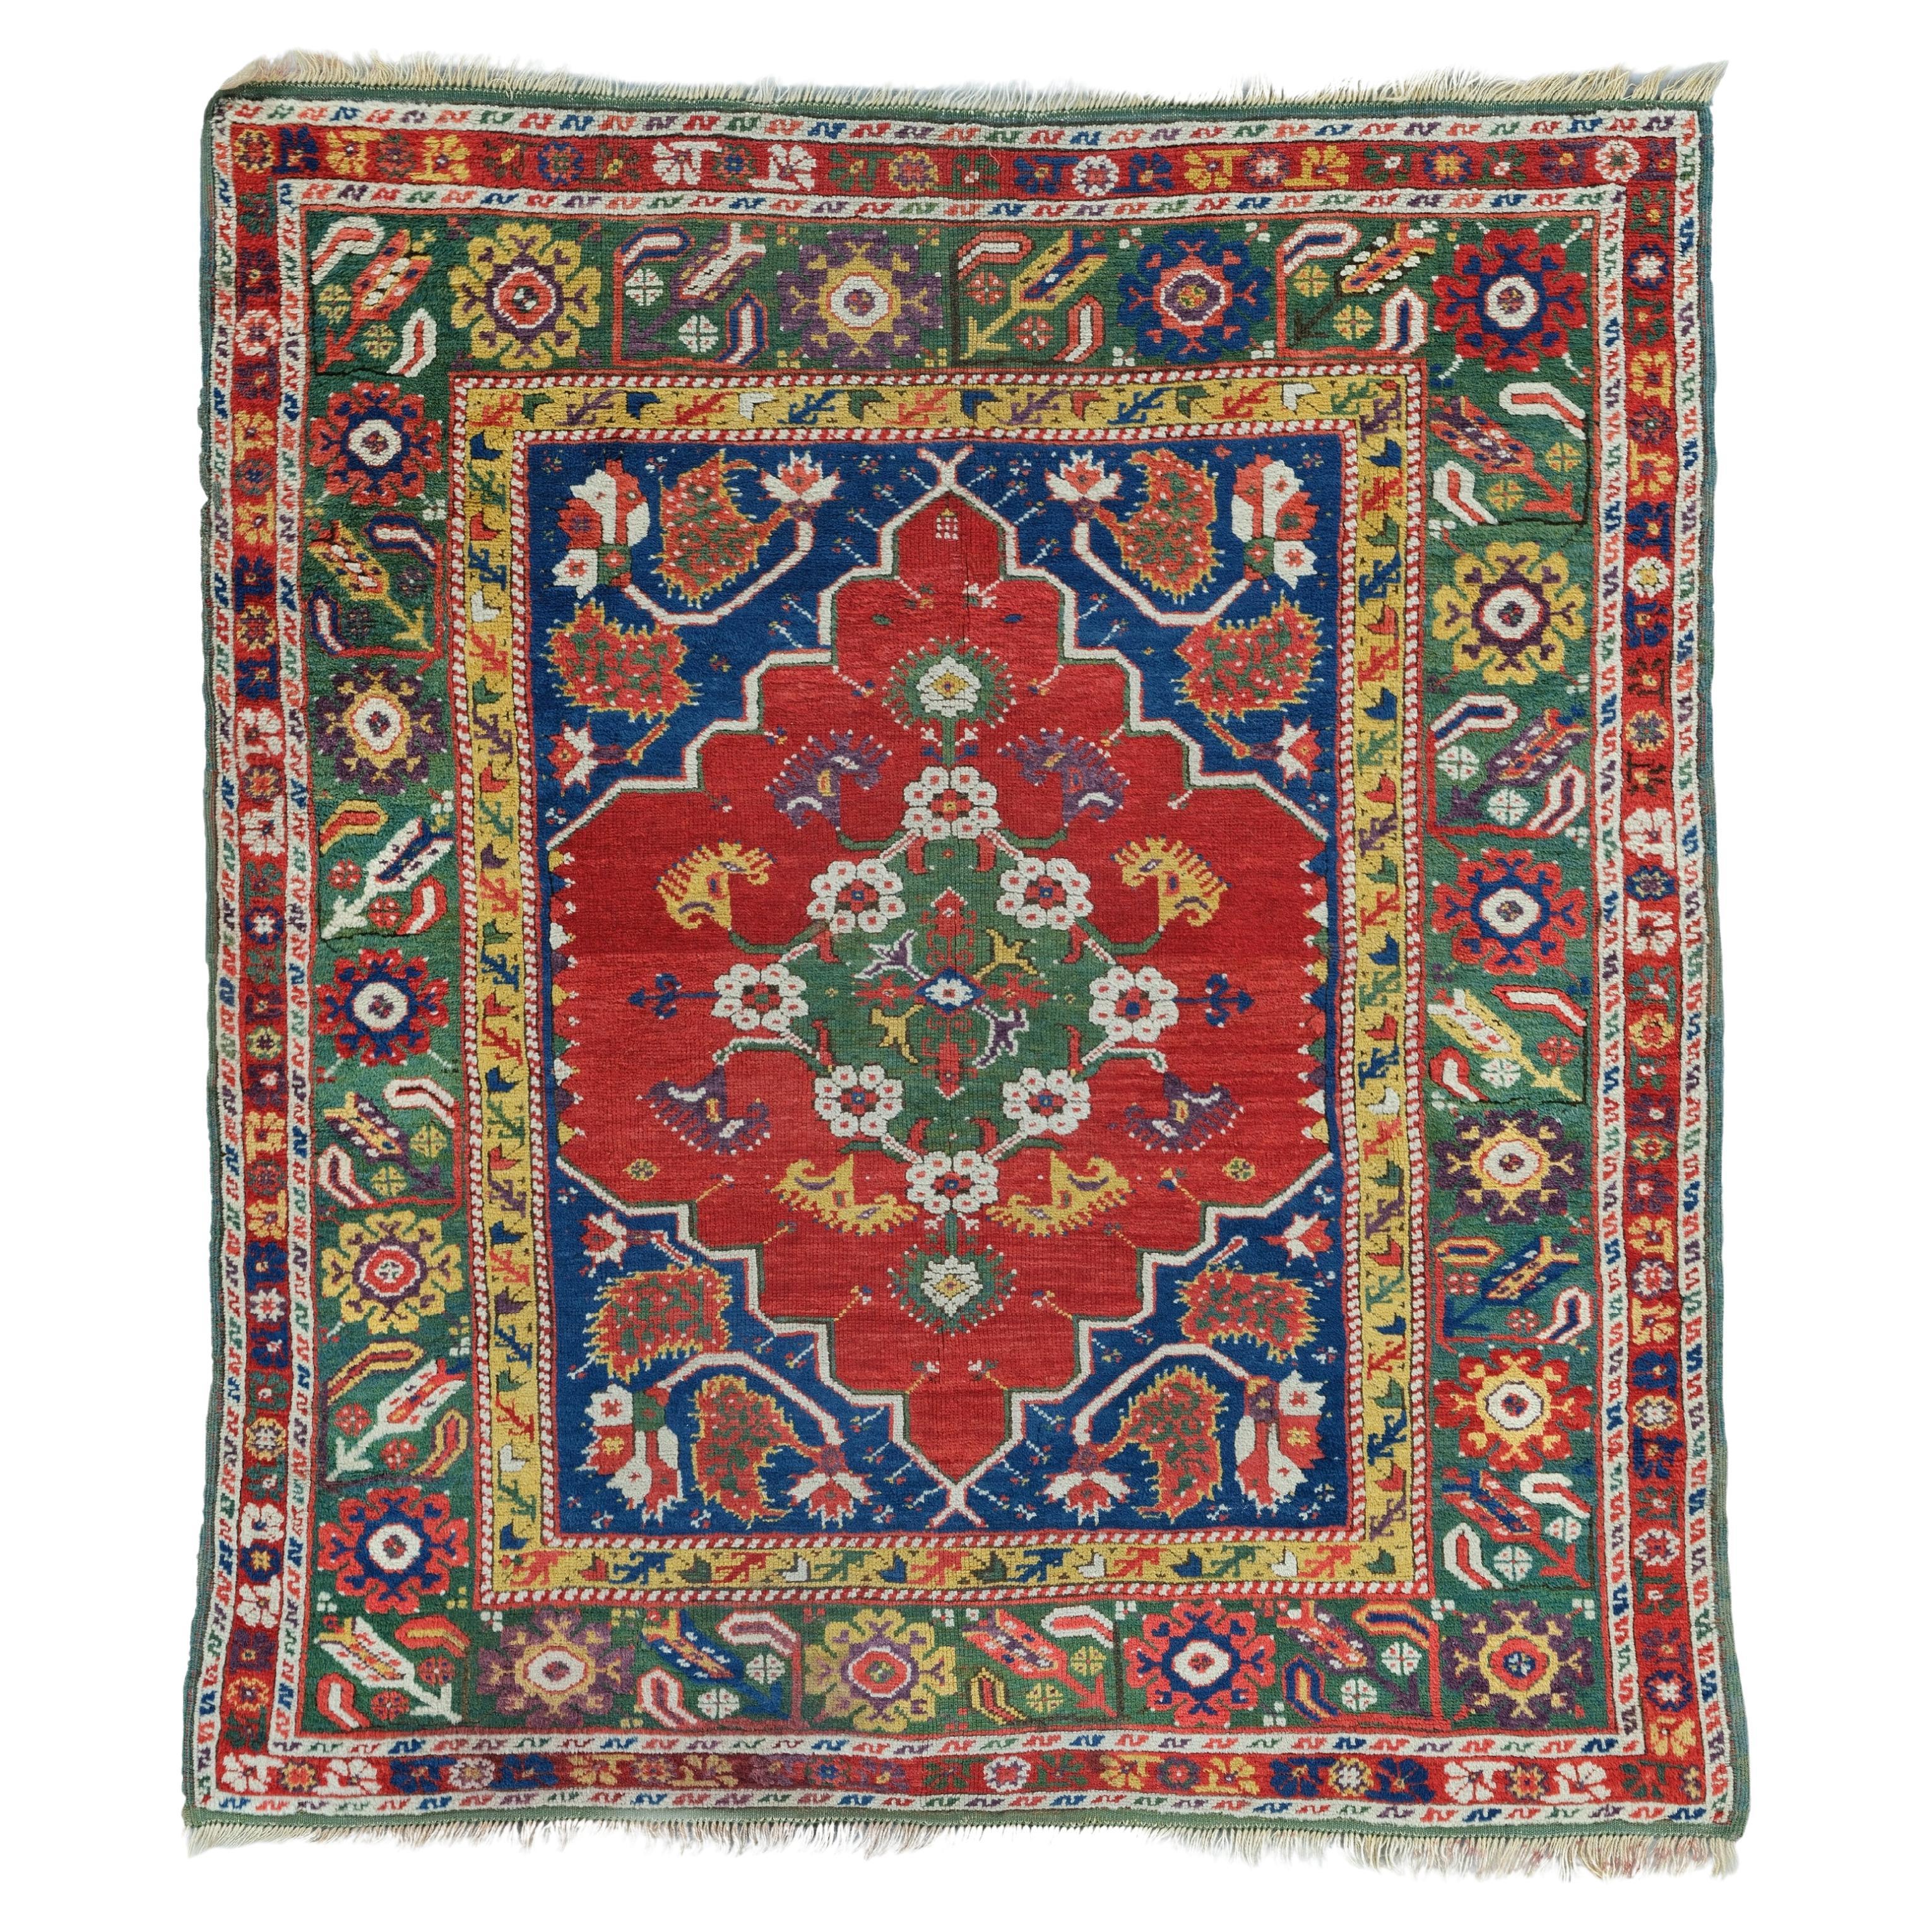 Tapis d'Ushak d'Anatolie occidentale du 18ème siècle - Tapis turc ancien, tapis en laine ancienne en vente